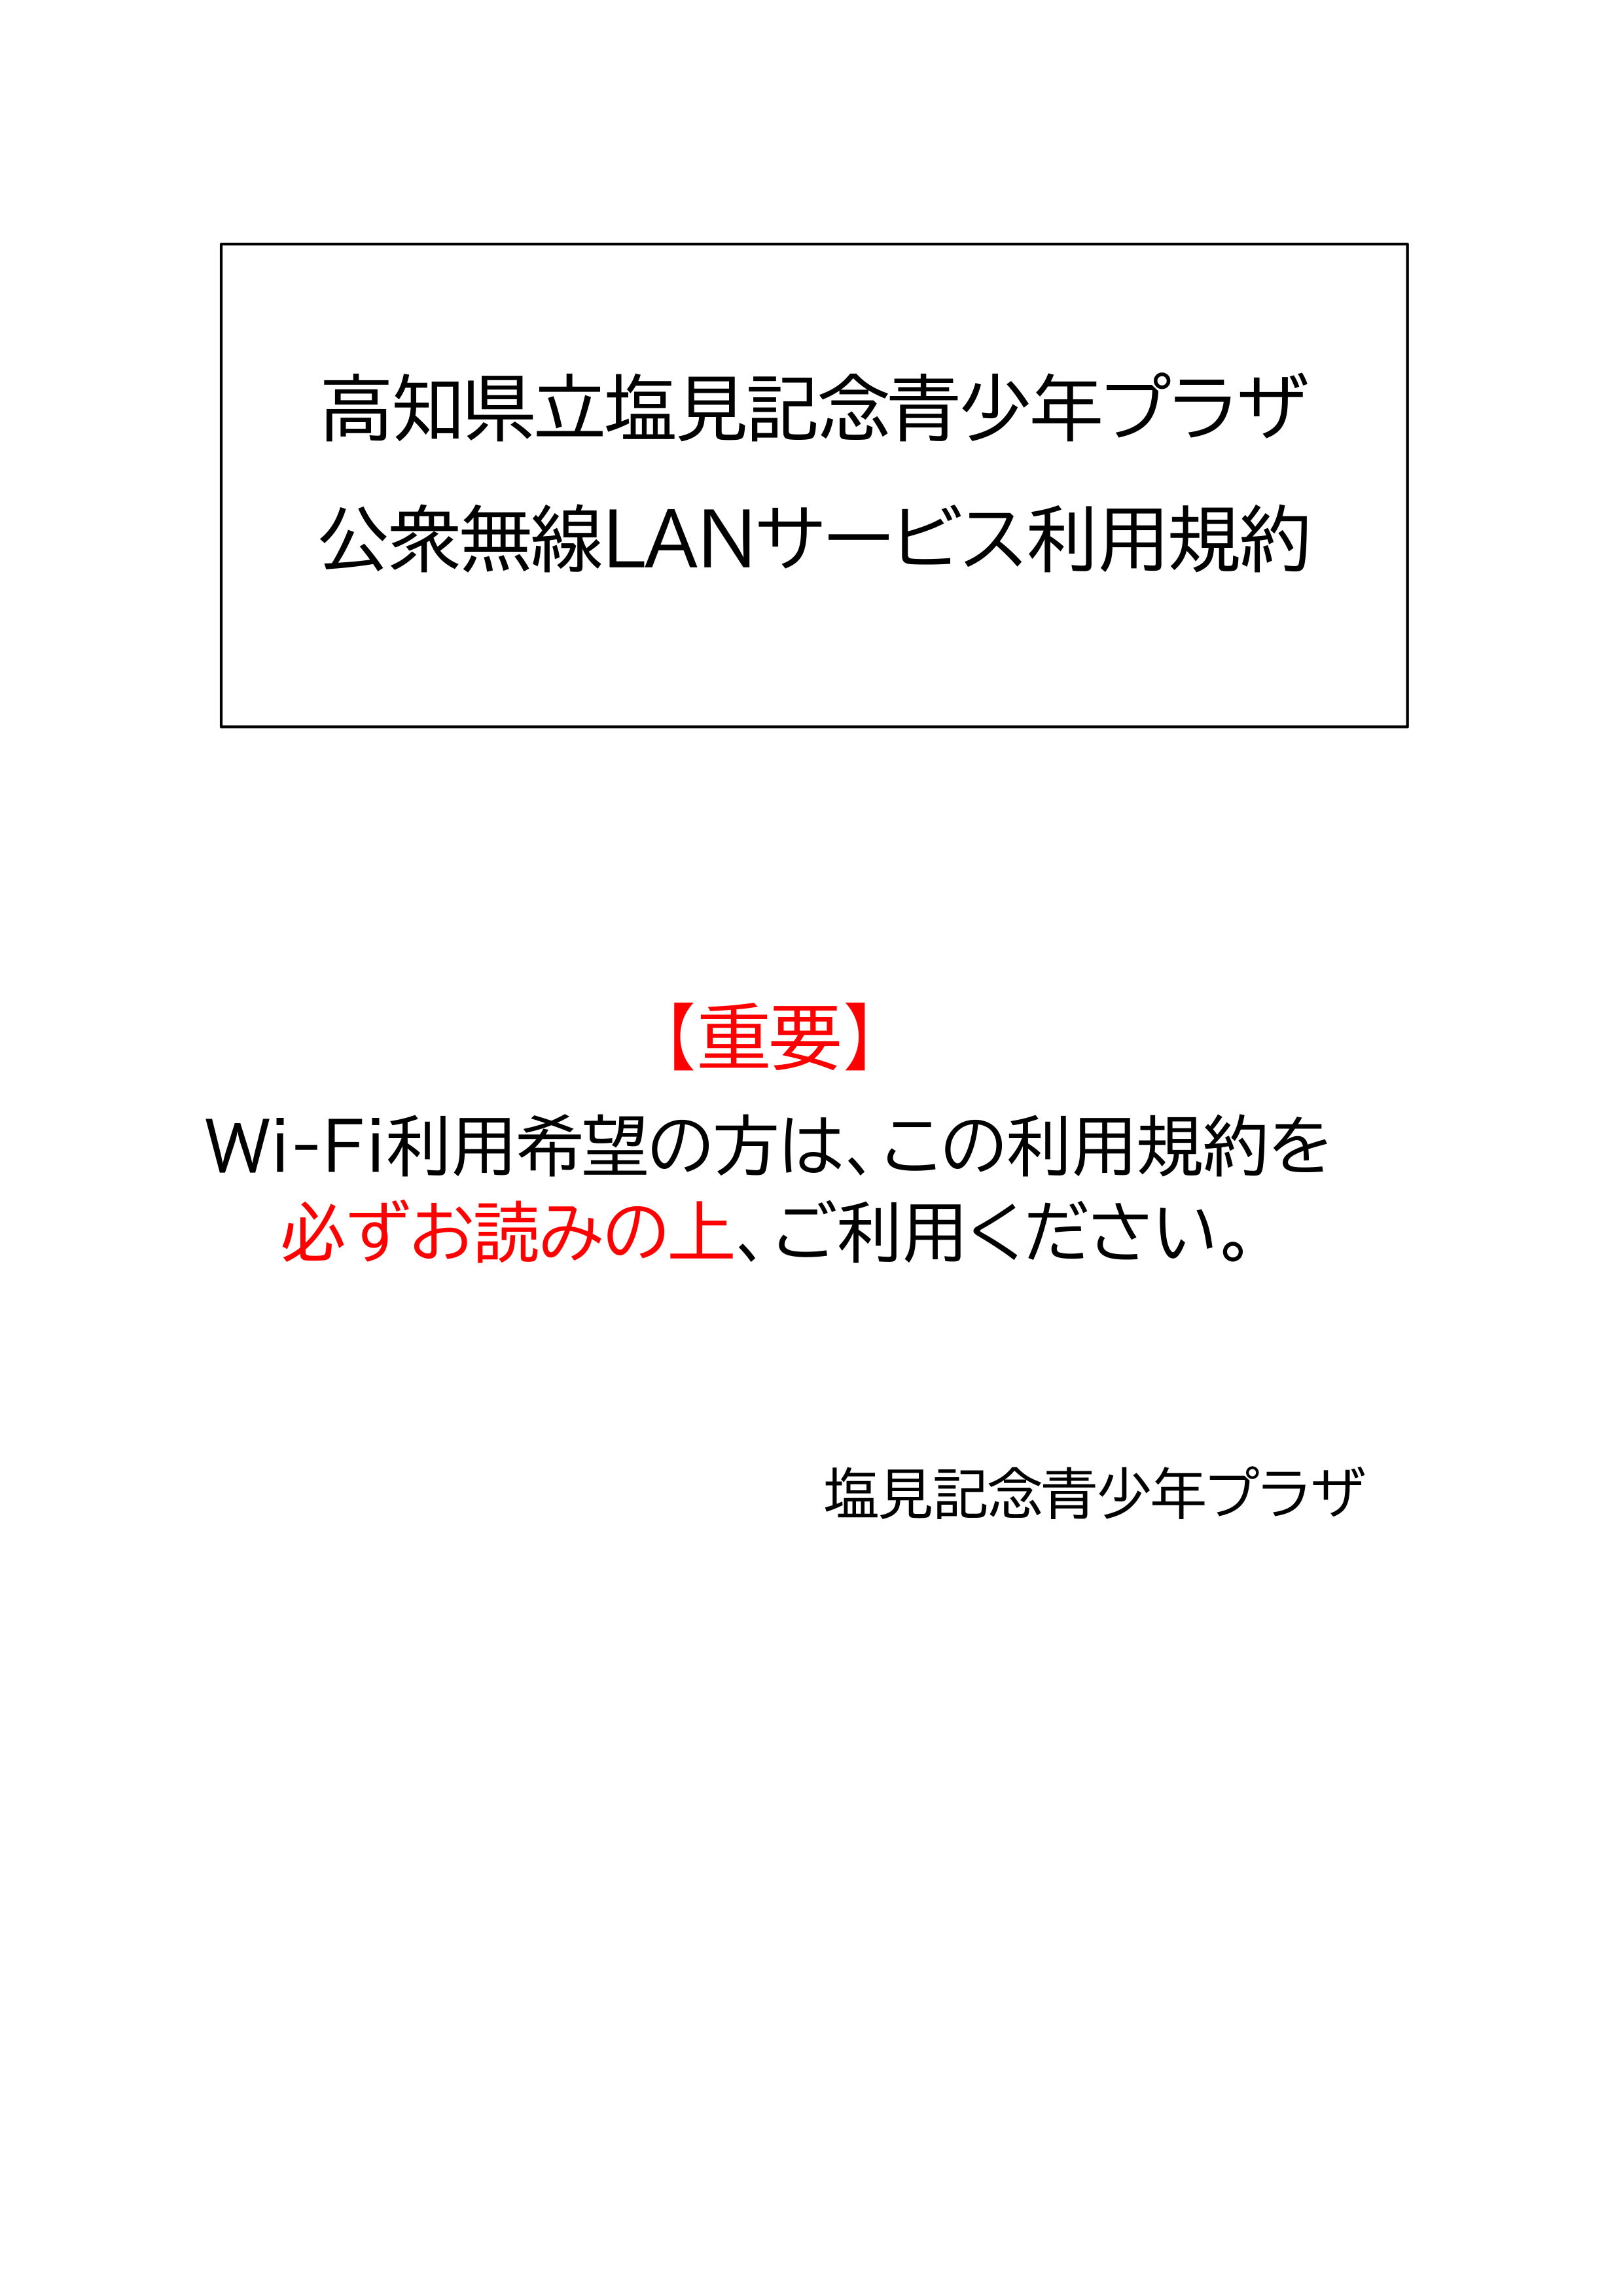 wi-fi.riyo-kiyaku-1.jpg